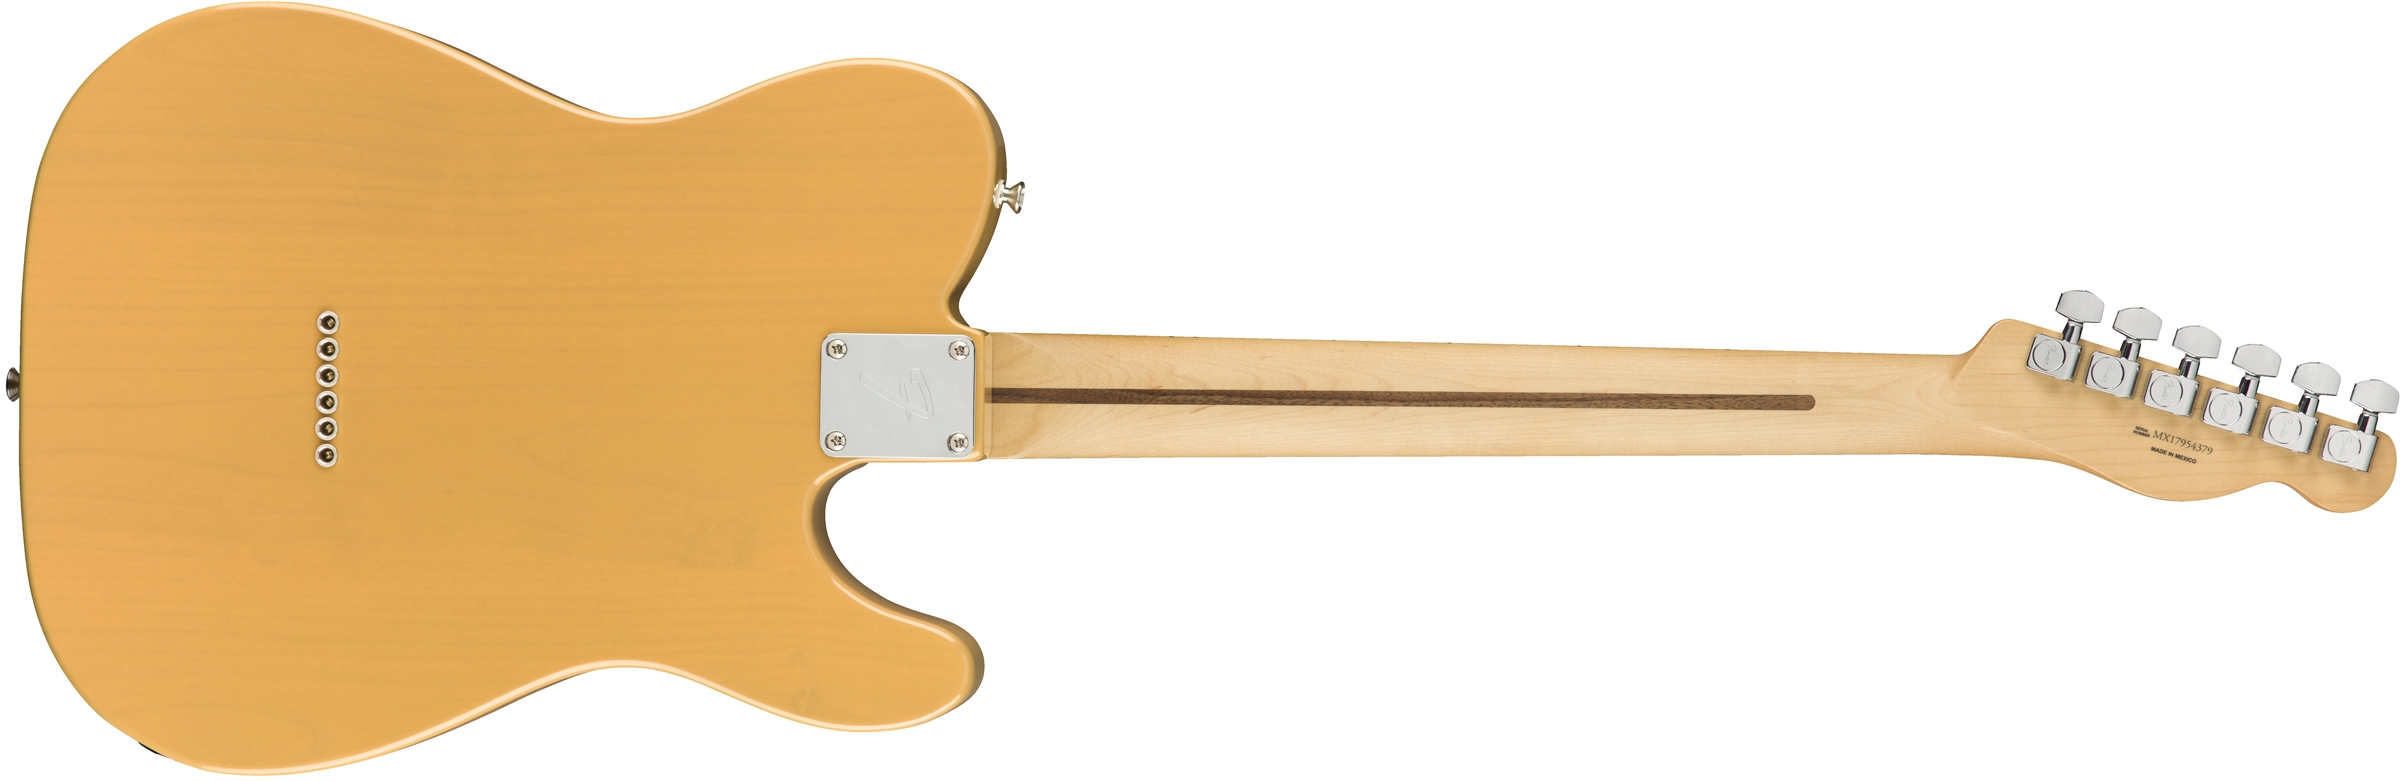 Fender Tele Player Lh Gaucher Mex 2s Mn - Butterscotch Blonde - Linkshandige elektrische gitaar - Variation 1